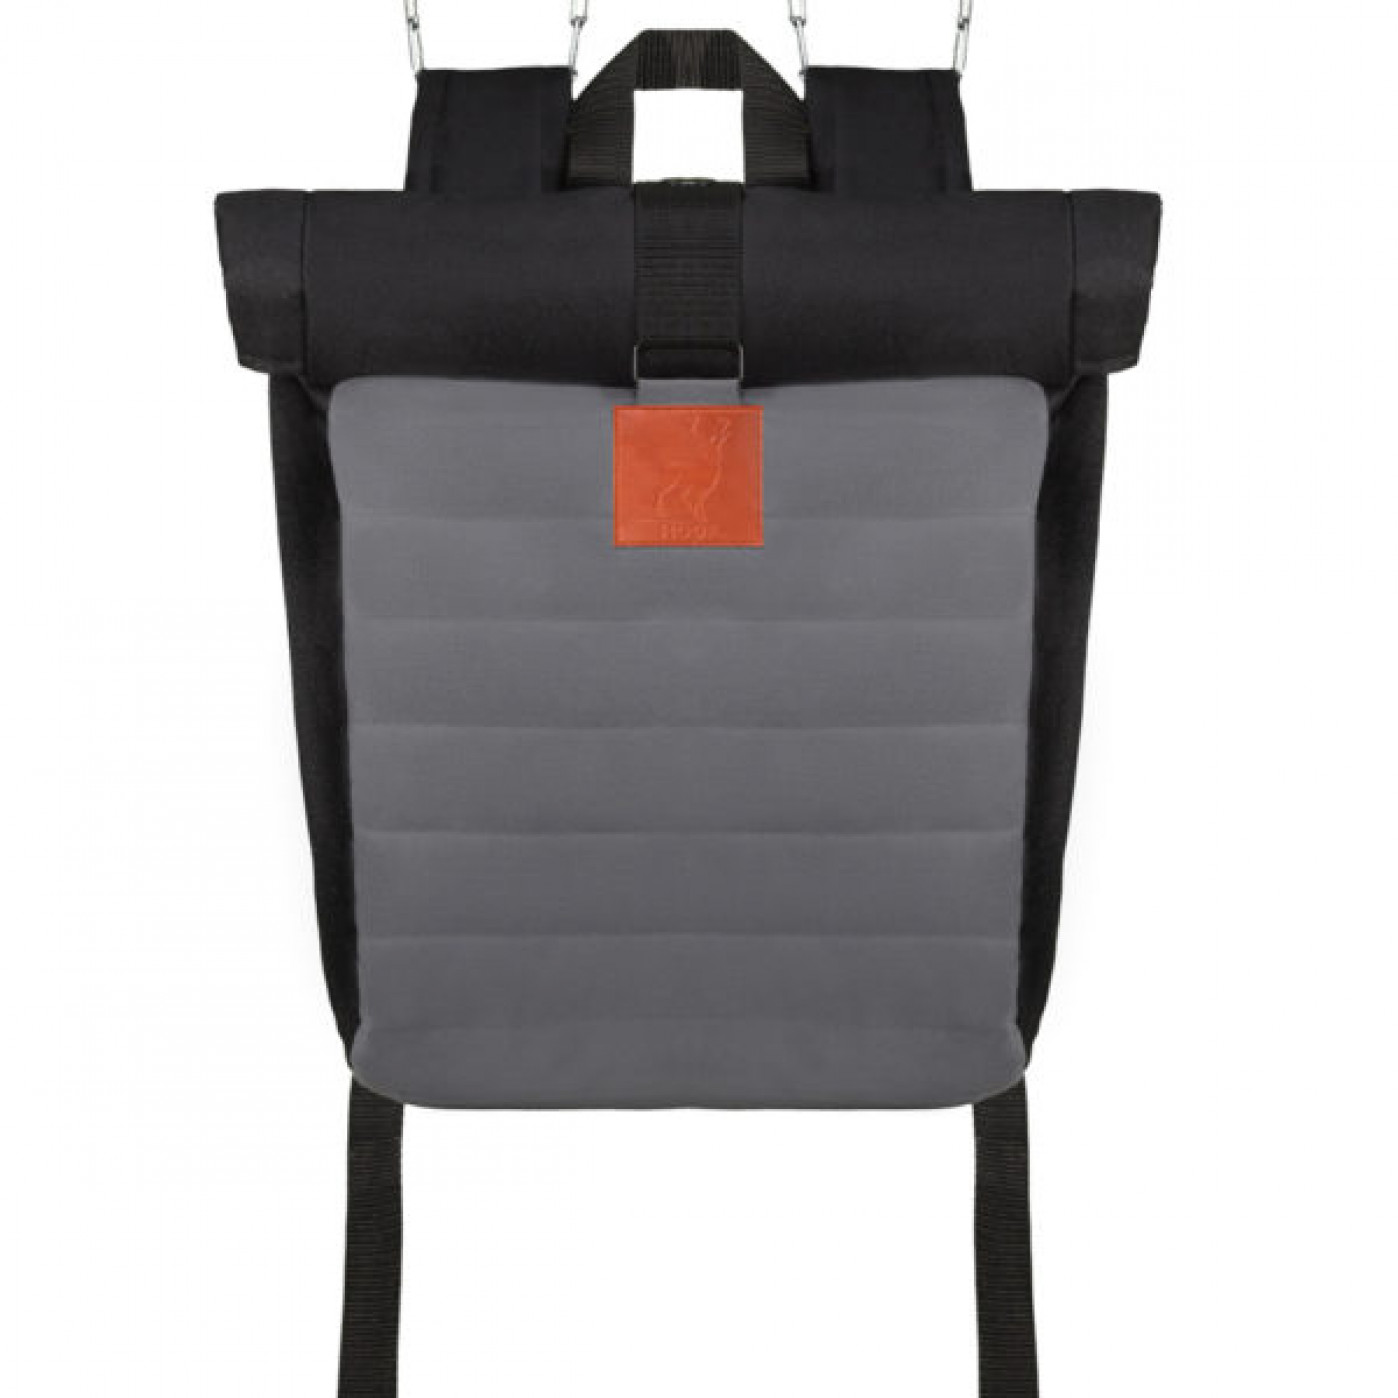 Ролл-топ рюкзак с изменяющимся объемом серый